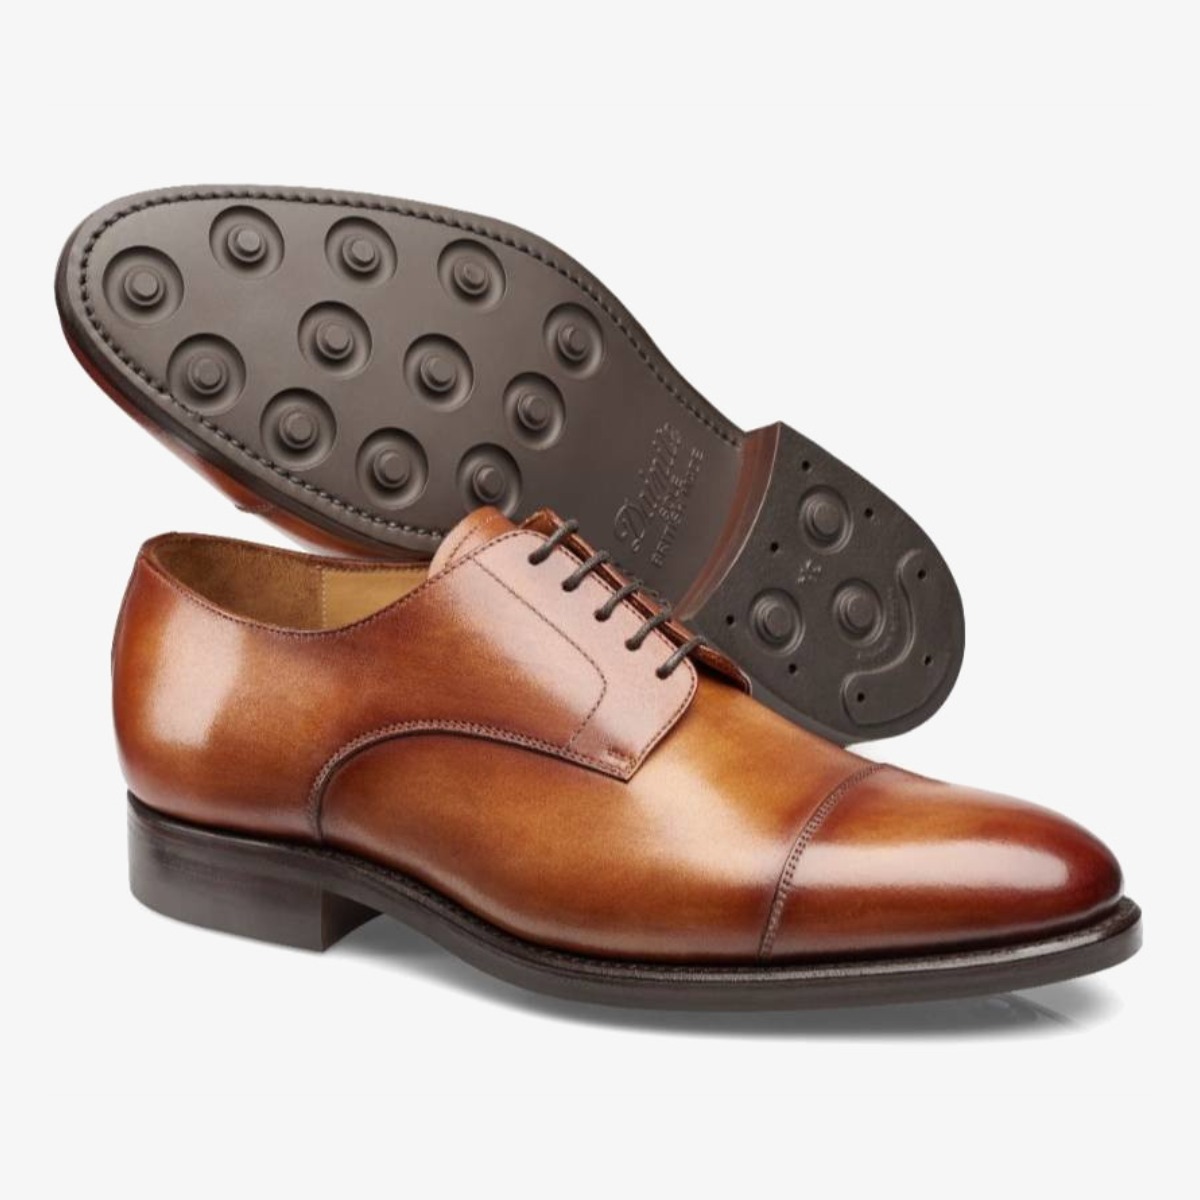 Carlos Santos 9381 Gary brown toe cap men's derby shoes